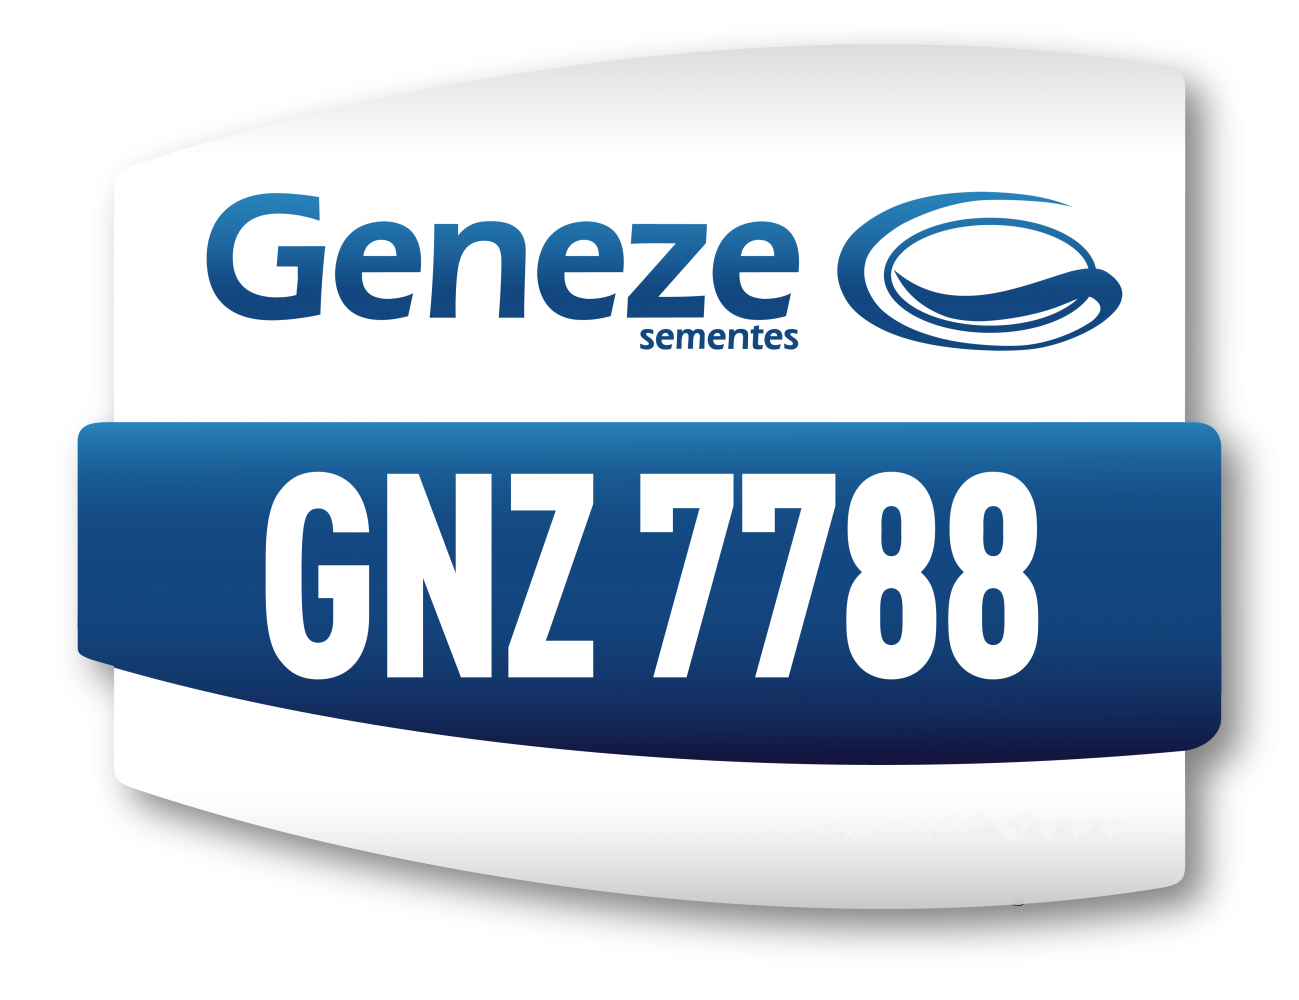 GNZ 7788